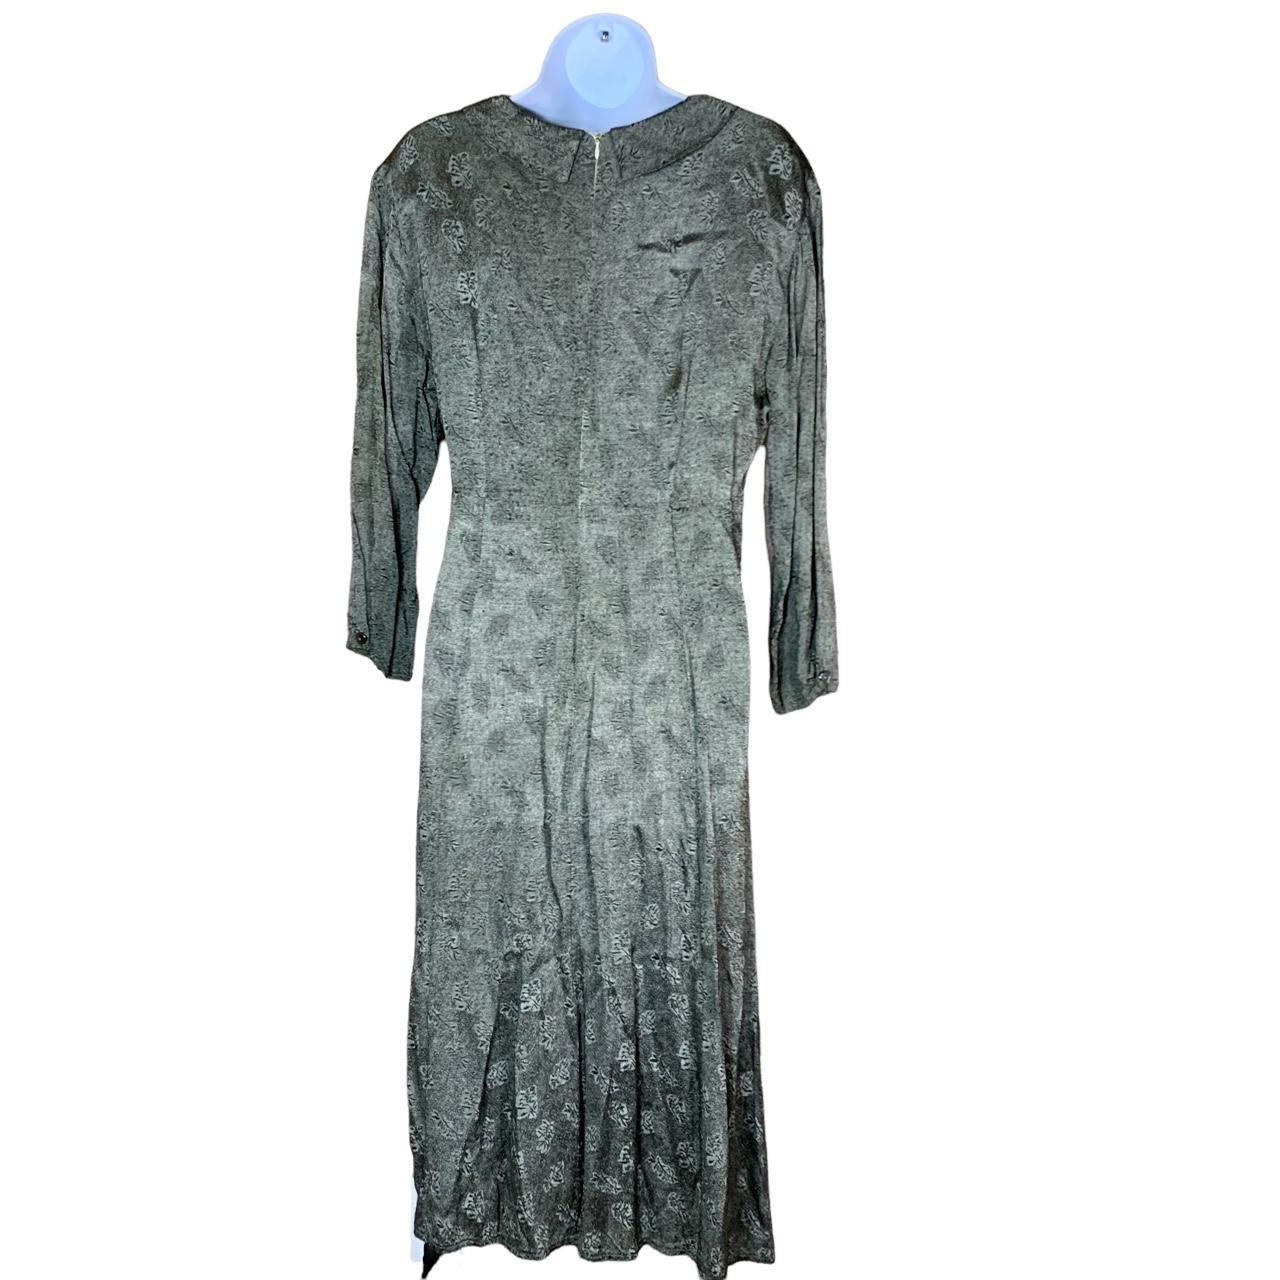 Vintage Karavan long sleeve dress. Great condition!... - Depop